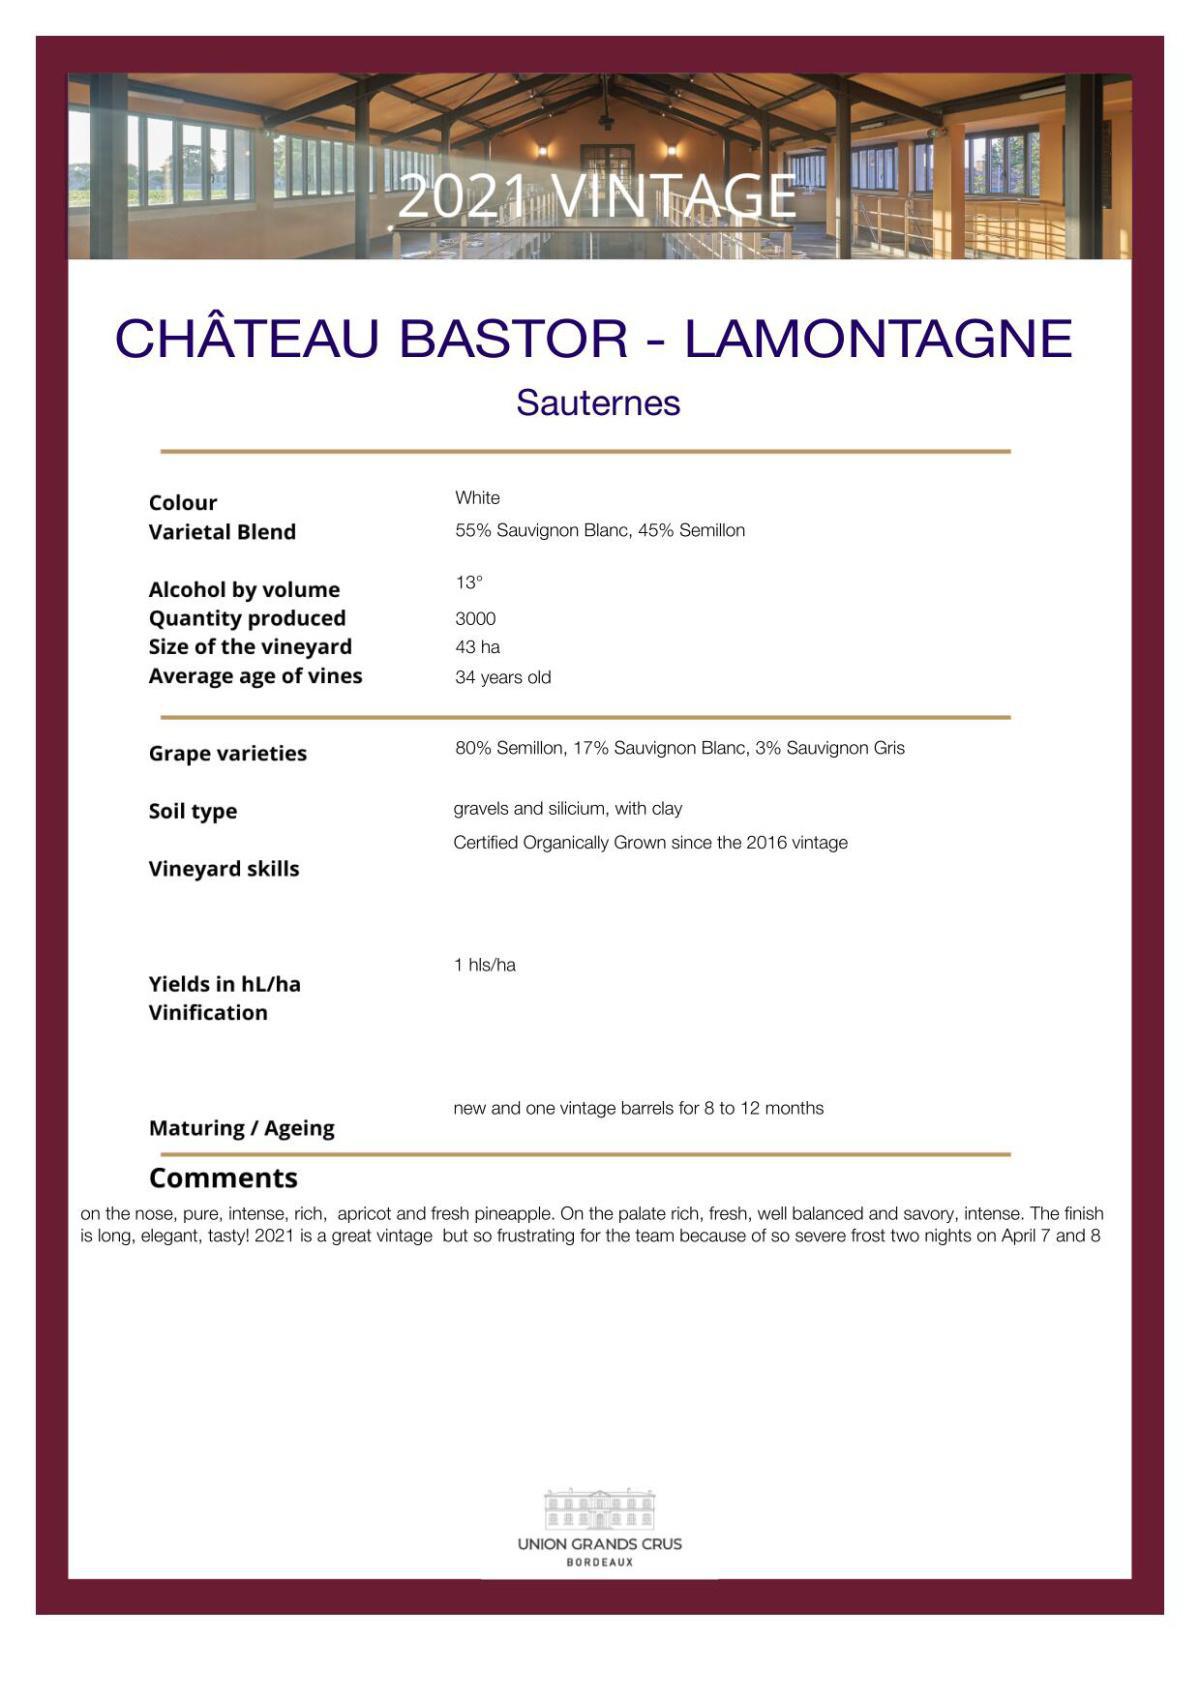 Château Bastor - Lamontagne